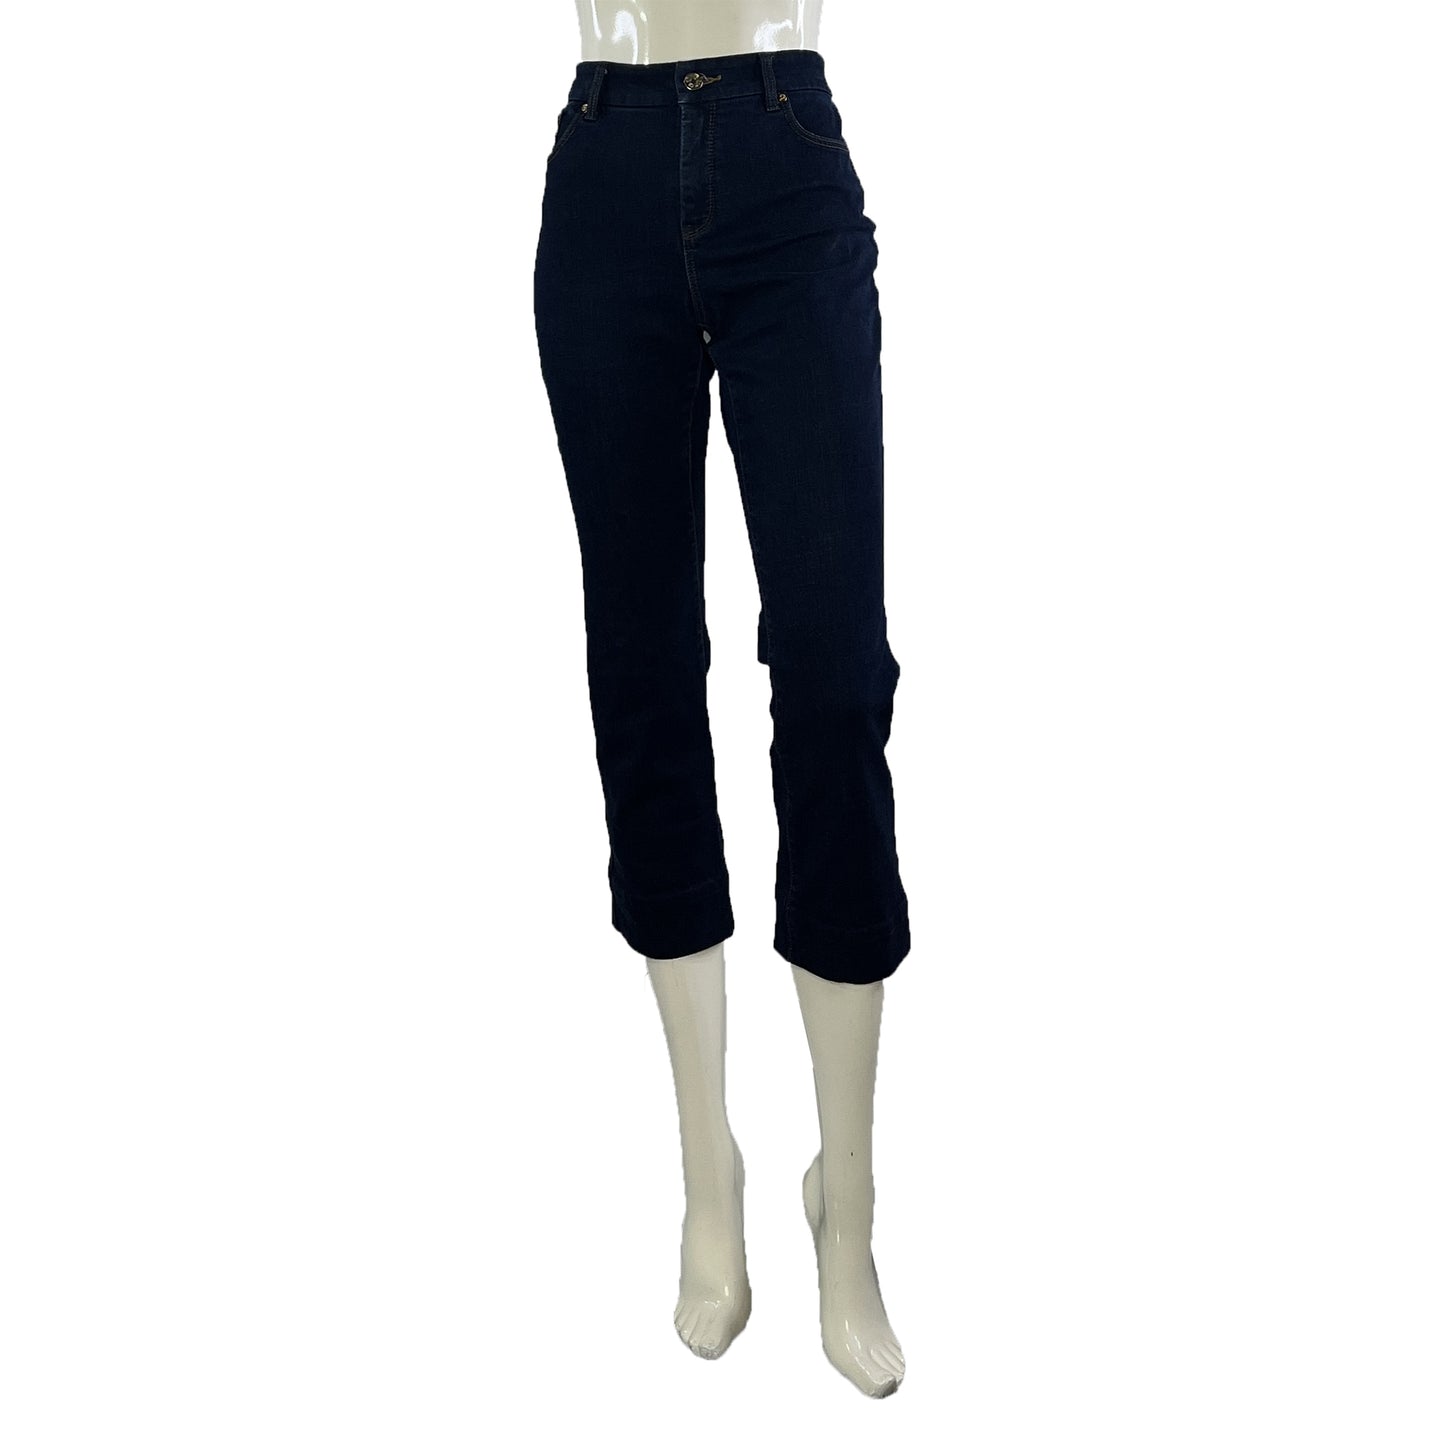 Chico's Denim Capri Jeans Dark Blue Size 8P SKU 000002-2